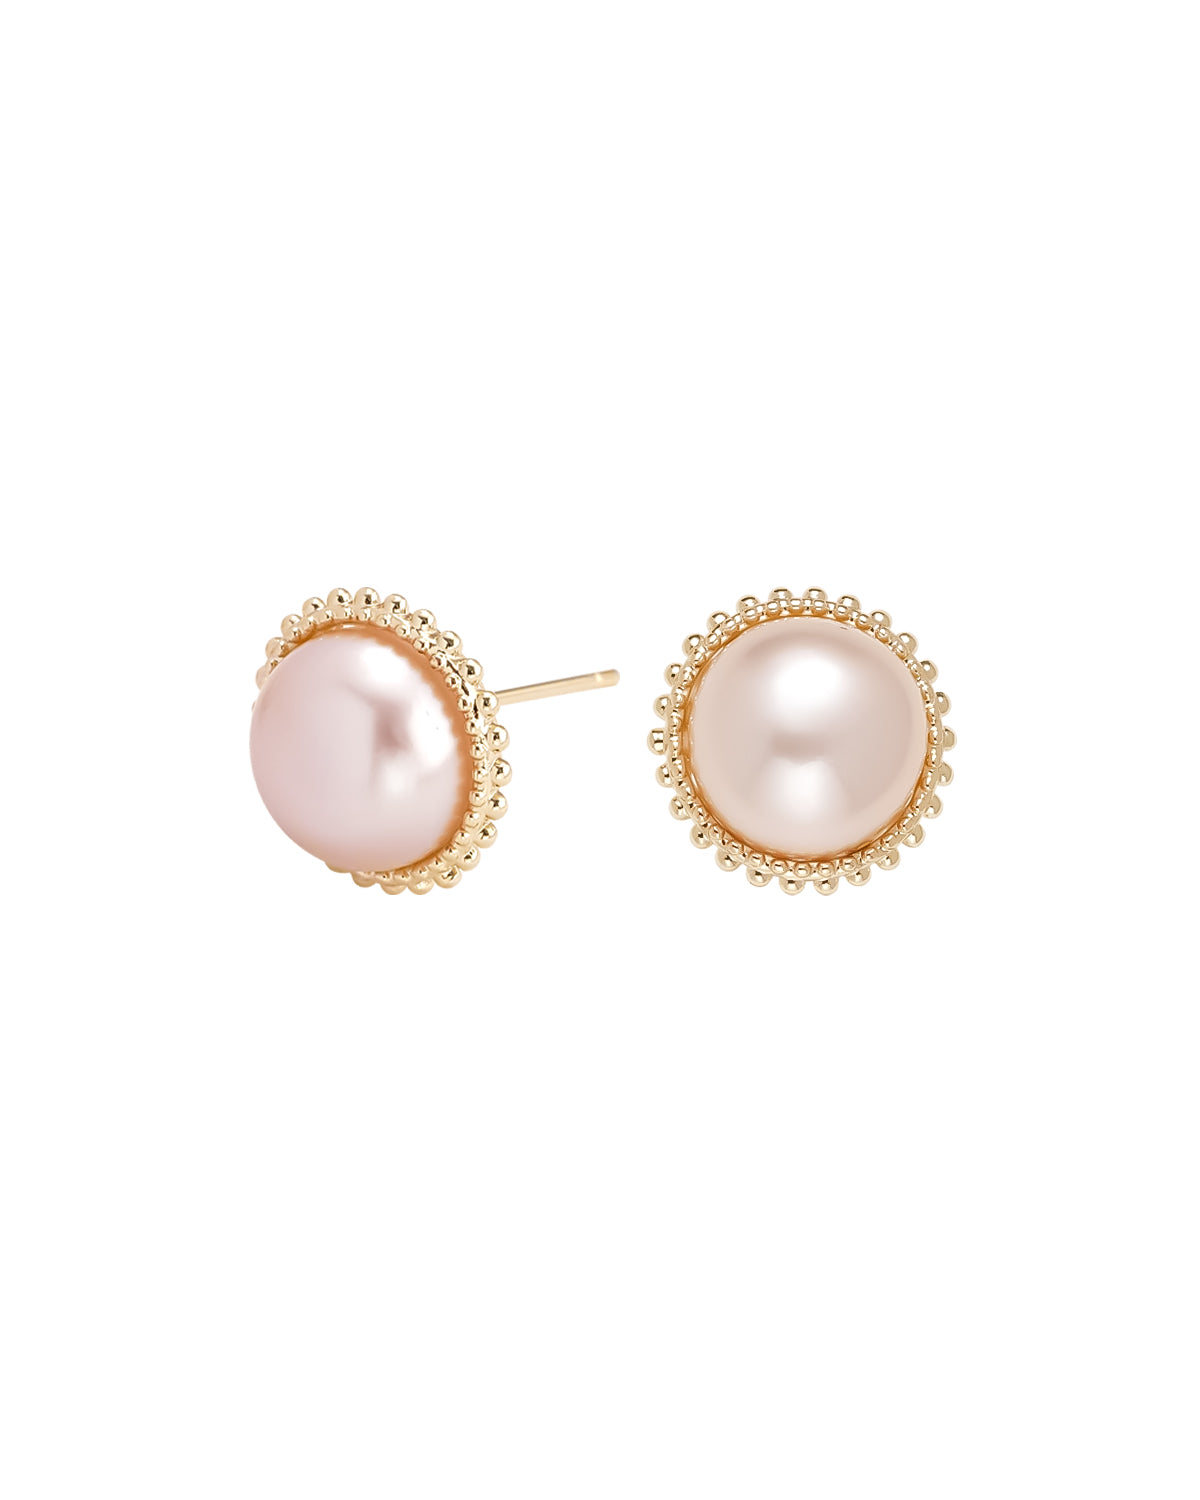 20-21mm Pink Freshwater Pearl Elegance Stud Earrings